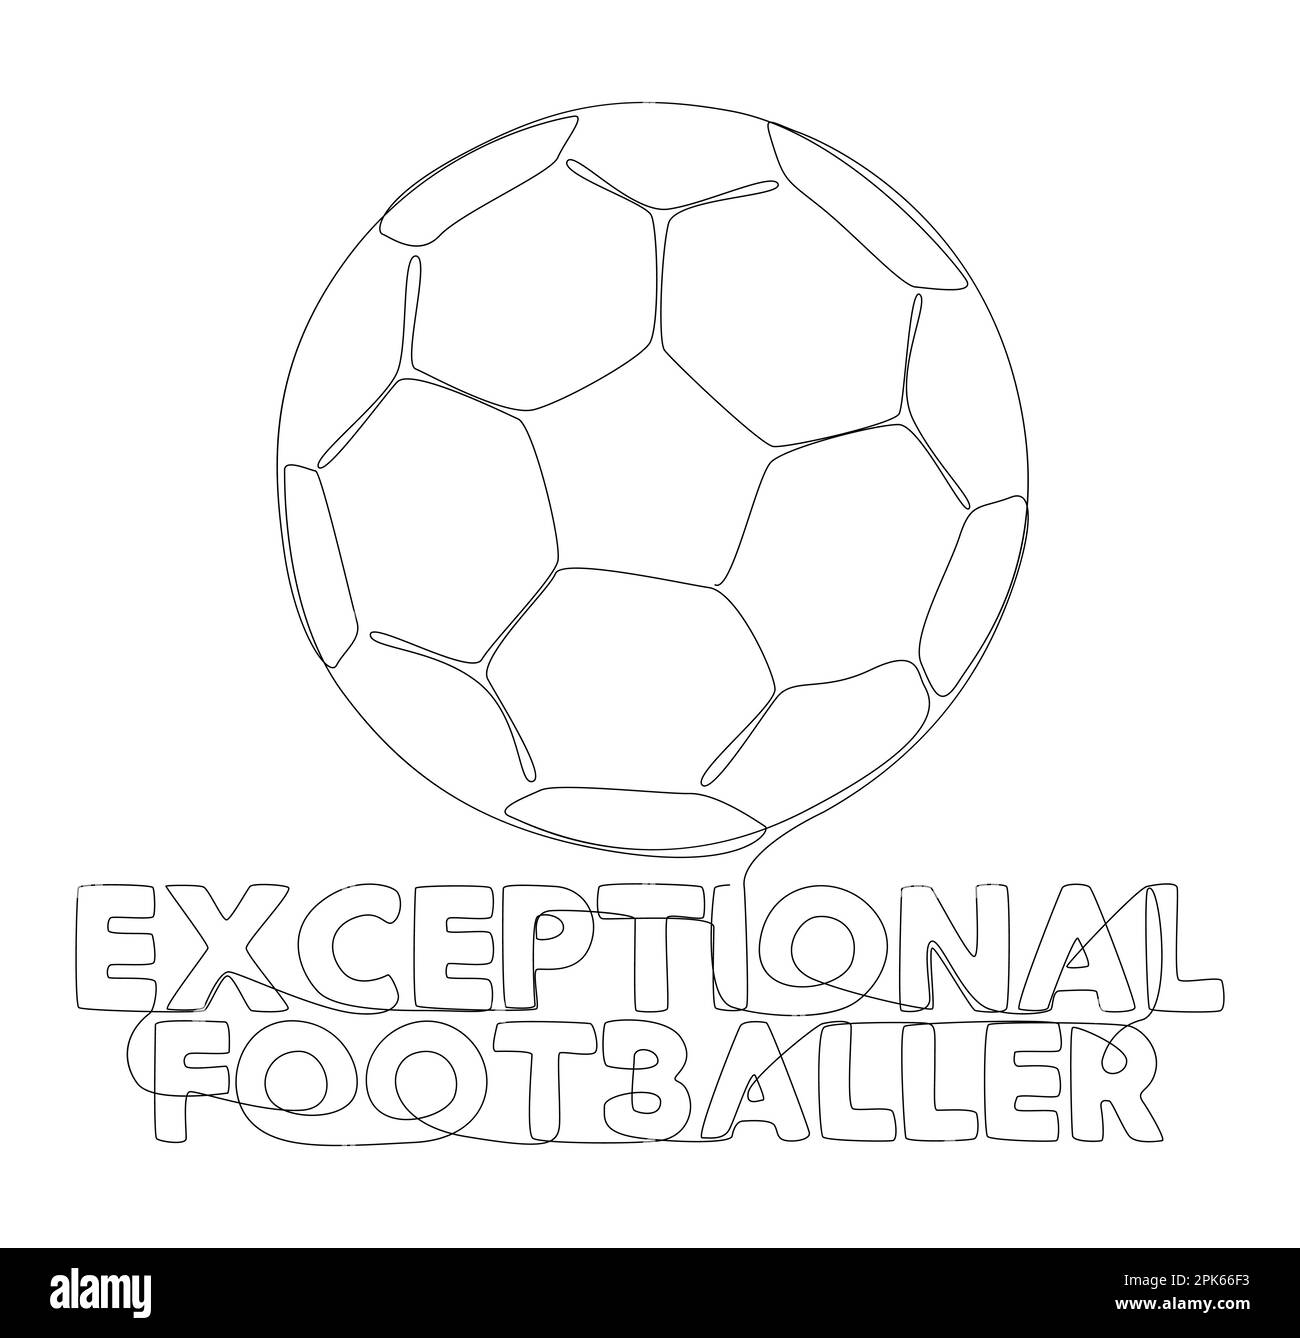 Eine durchgehende Textzeile „Exceptional Footballer“ mit Fußballball. Vektorkonzept zur Darstellung dünner Linien. Kontur Zeichnen kreativer Ideen. Stock Vektor